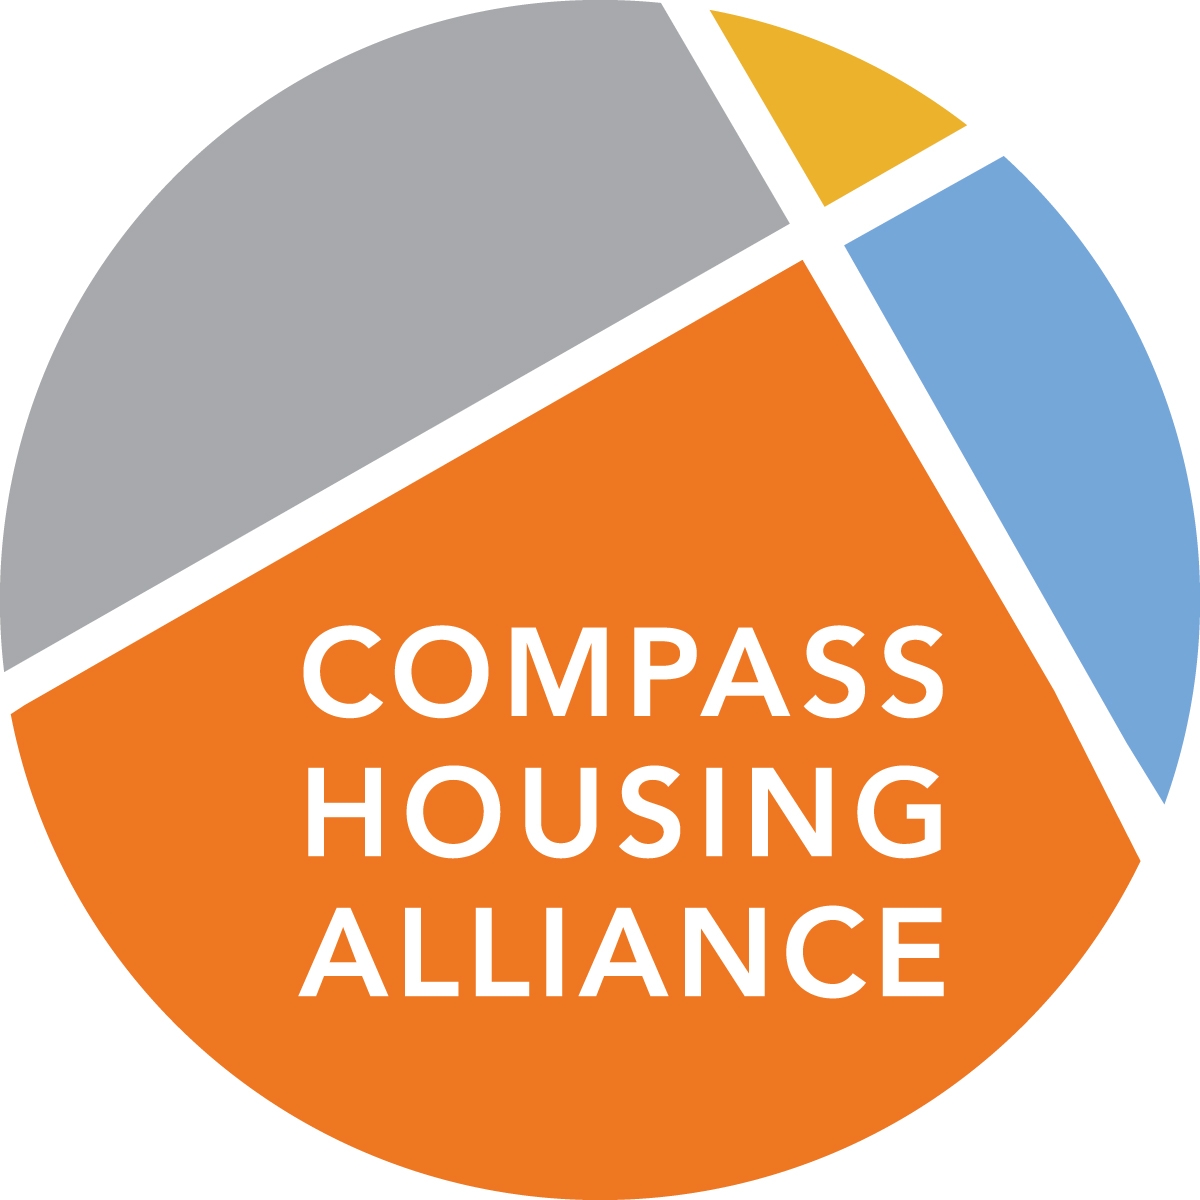 Compass Center - Compass Housing Alliance Client Service Office